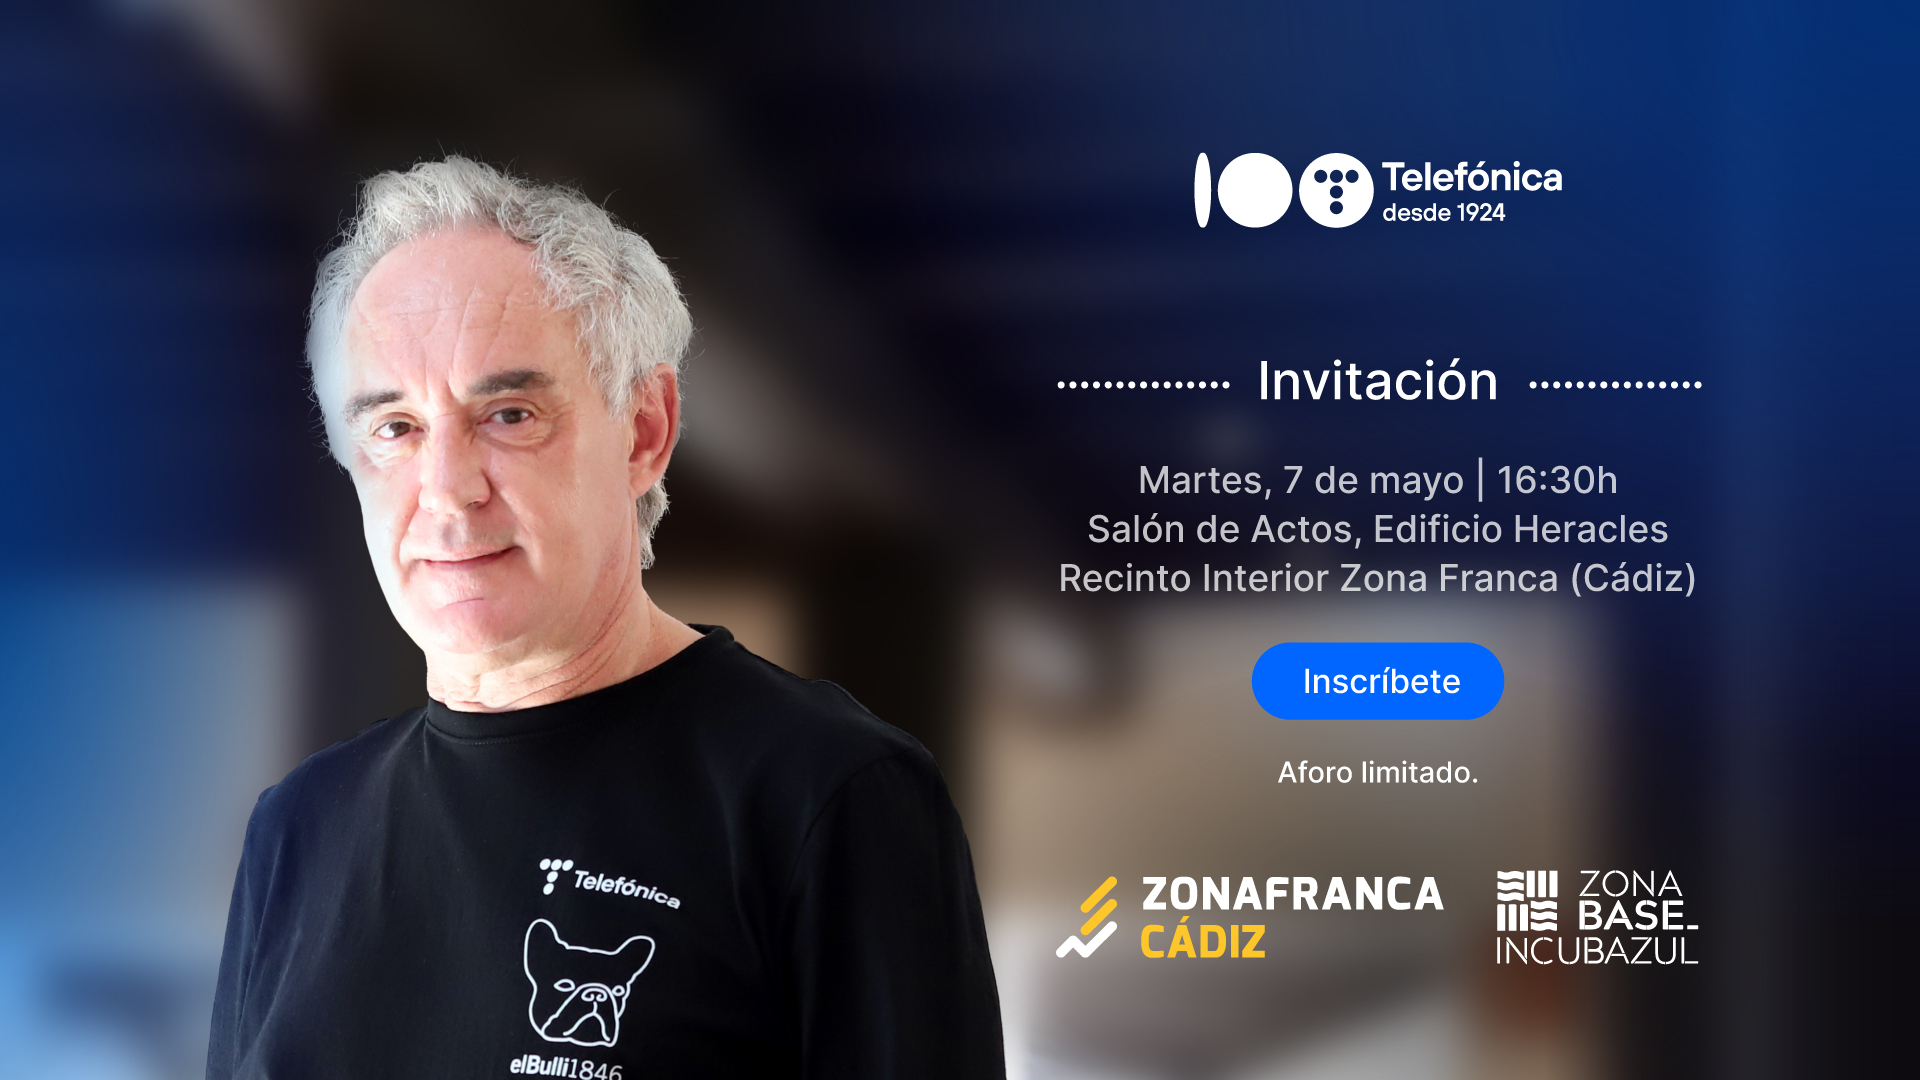 Gira Centenario Telefónica - Ferran Adriá en Cádiz